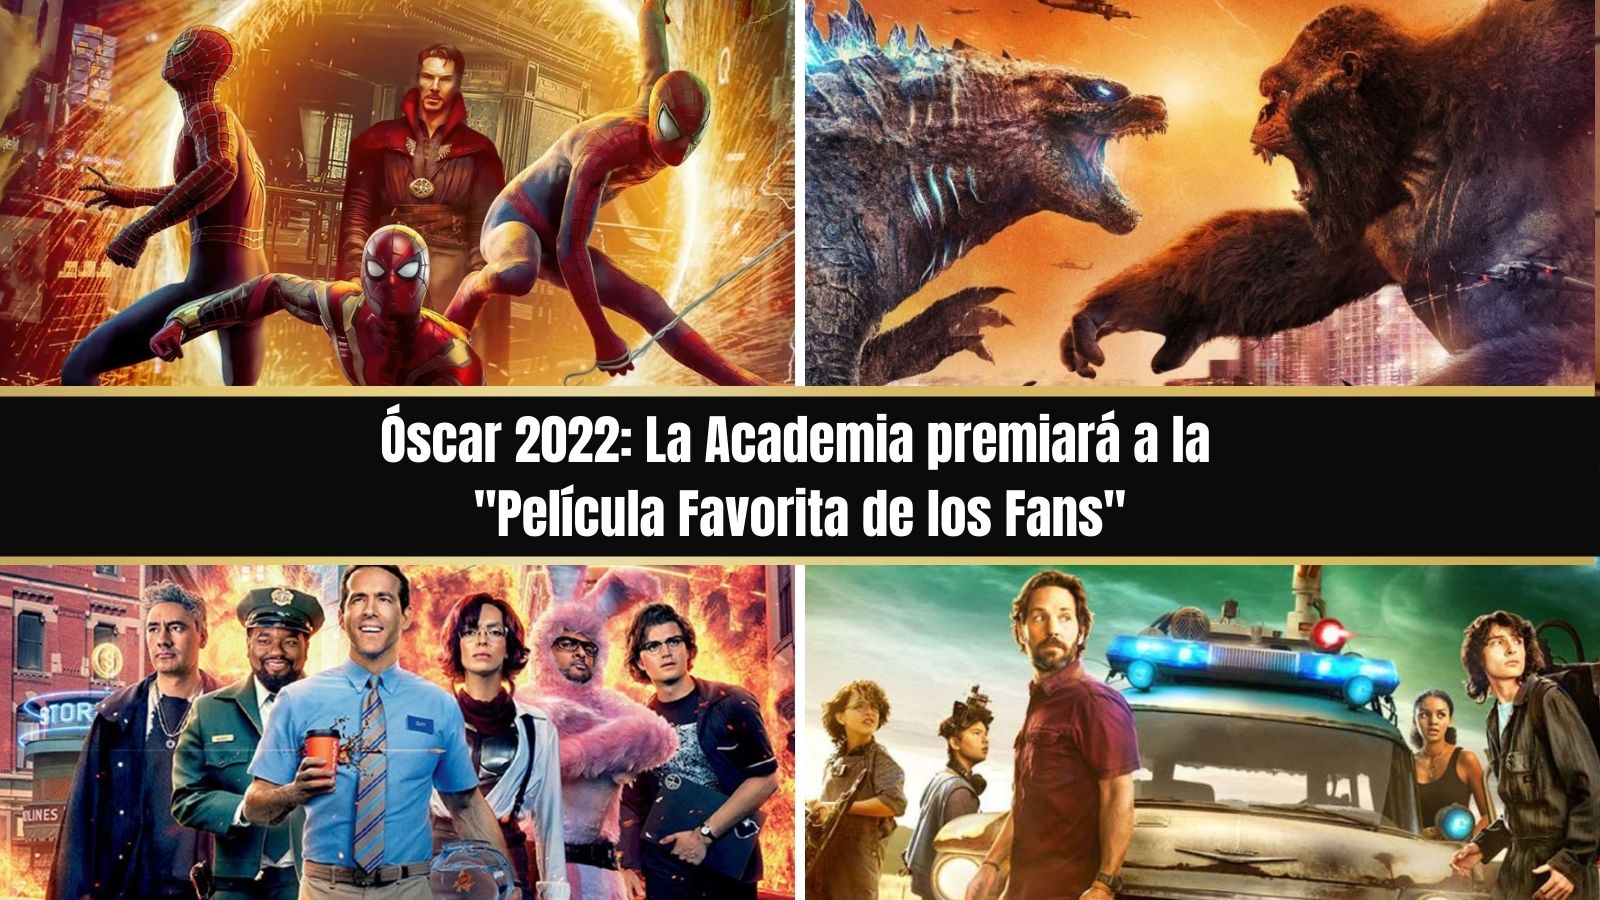 Óscar 2022 Película Favorita de los Fans